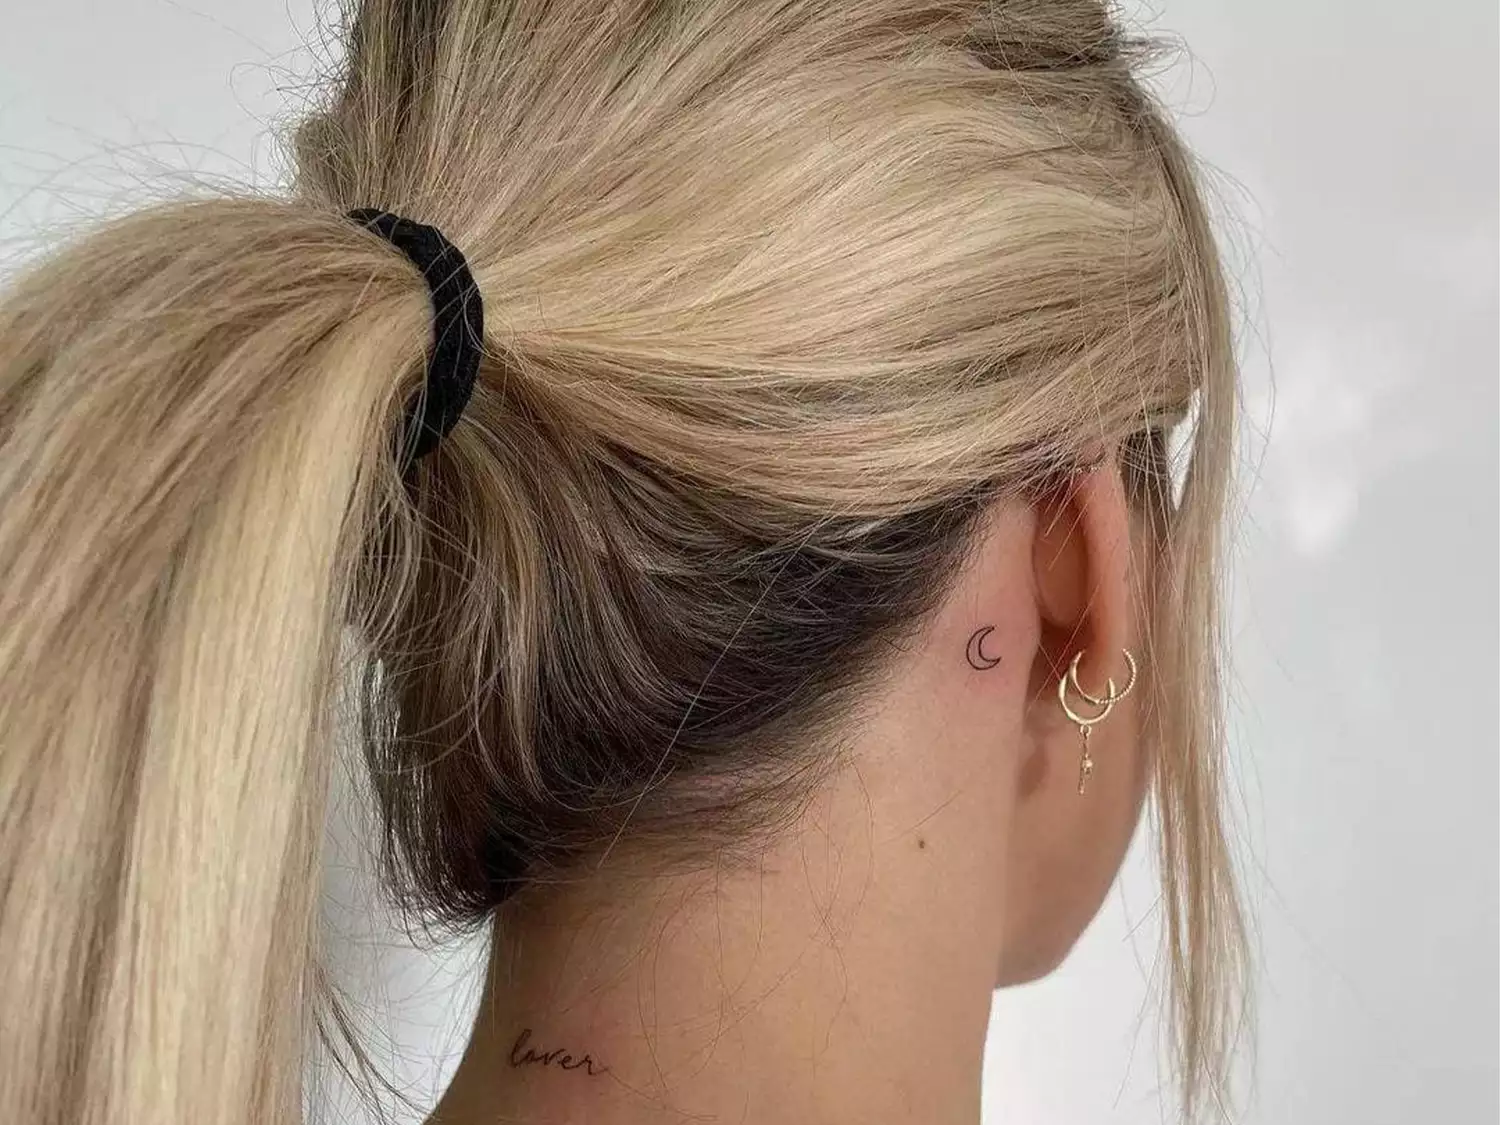 behind the ear moon tattoo